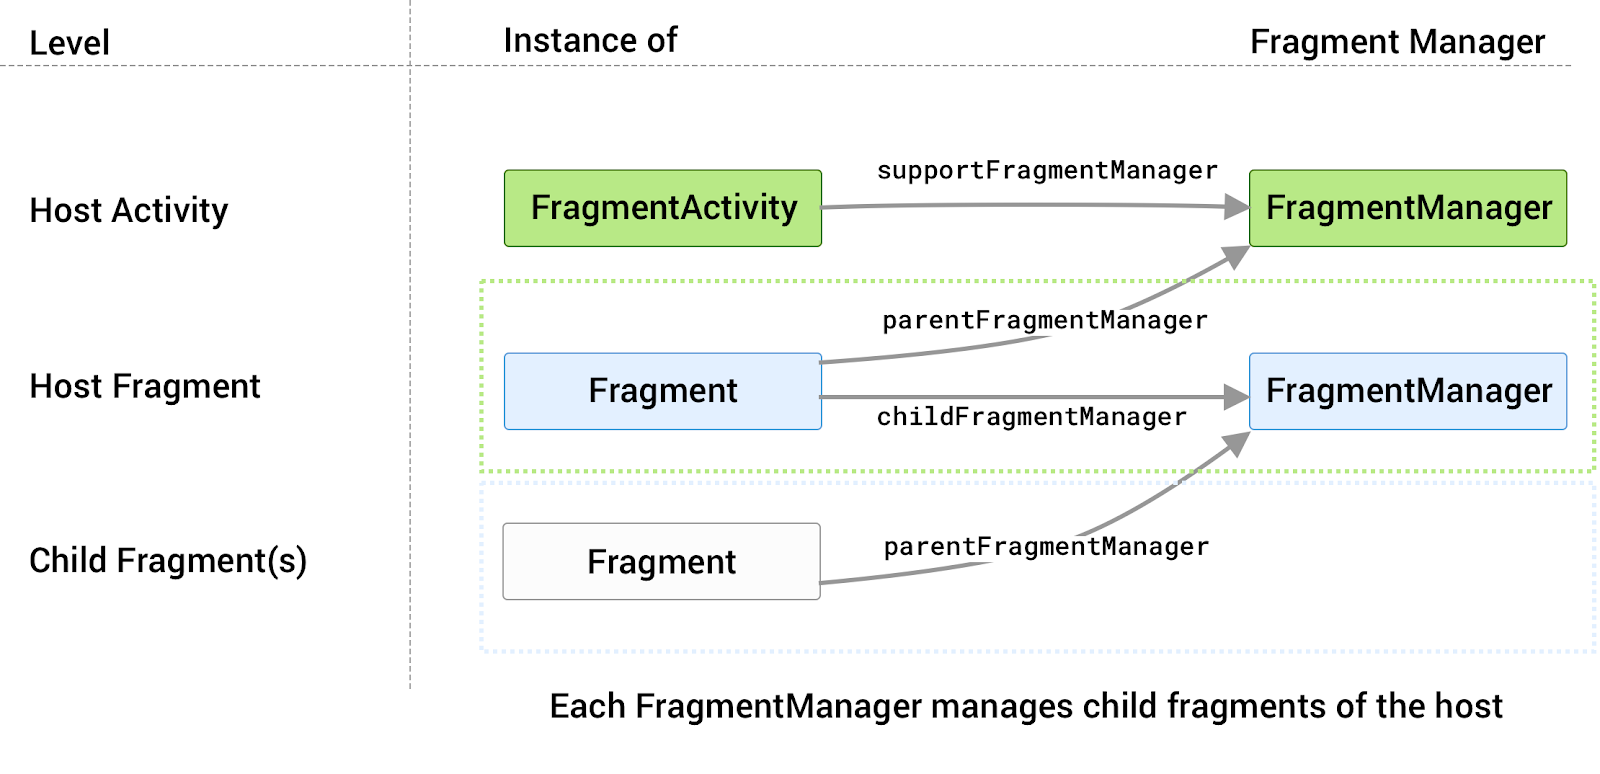 Cada host tem o próprio FragmentManager associado
            que gerencia os fragmentos filhos